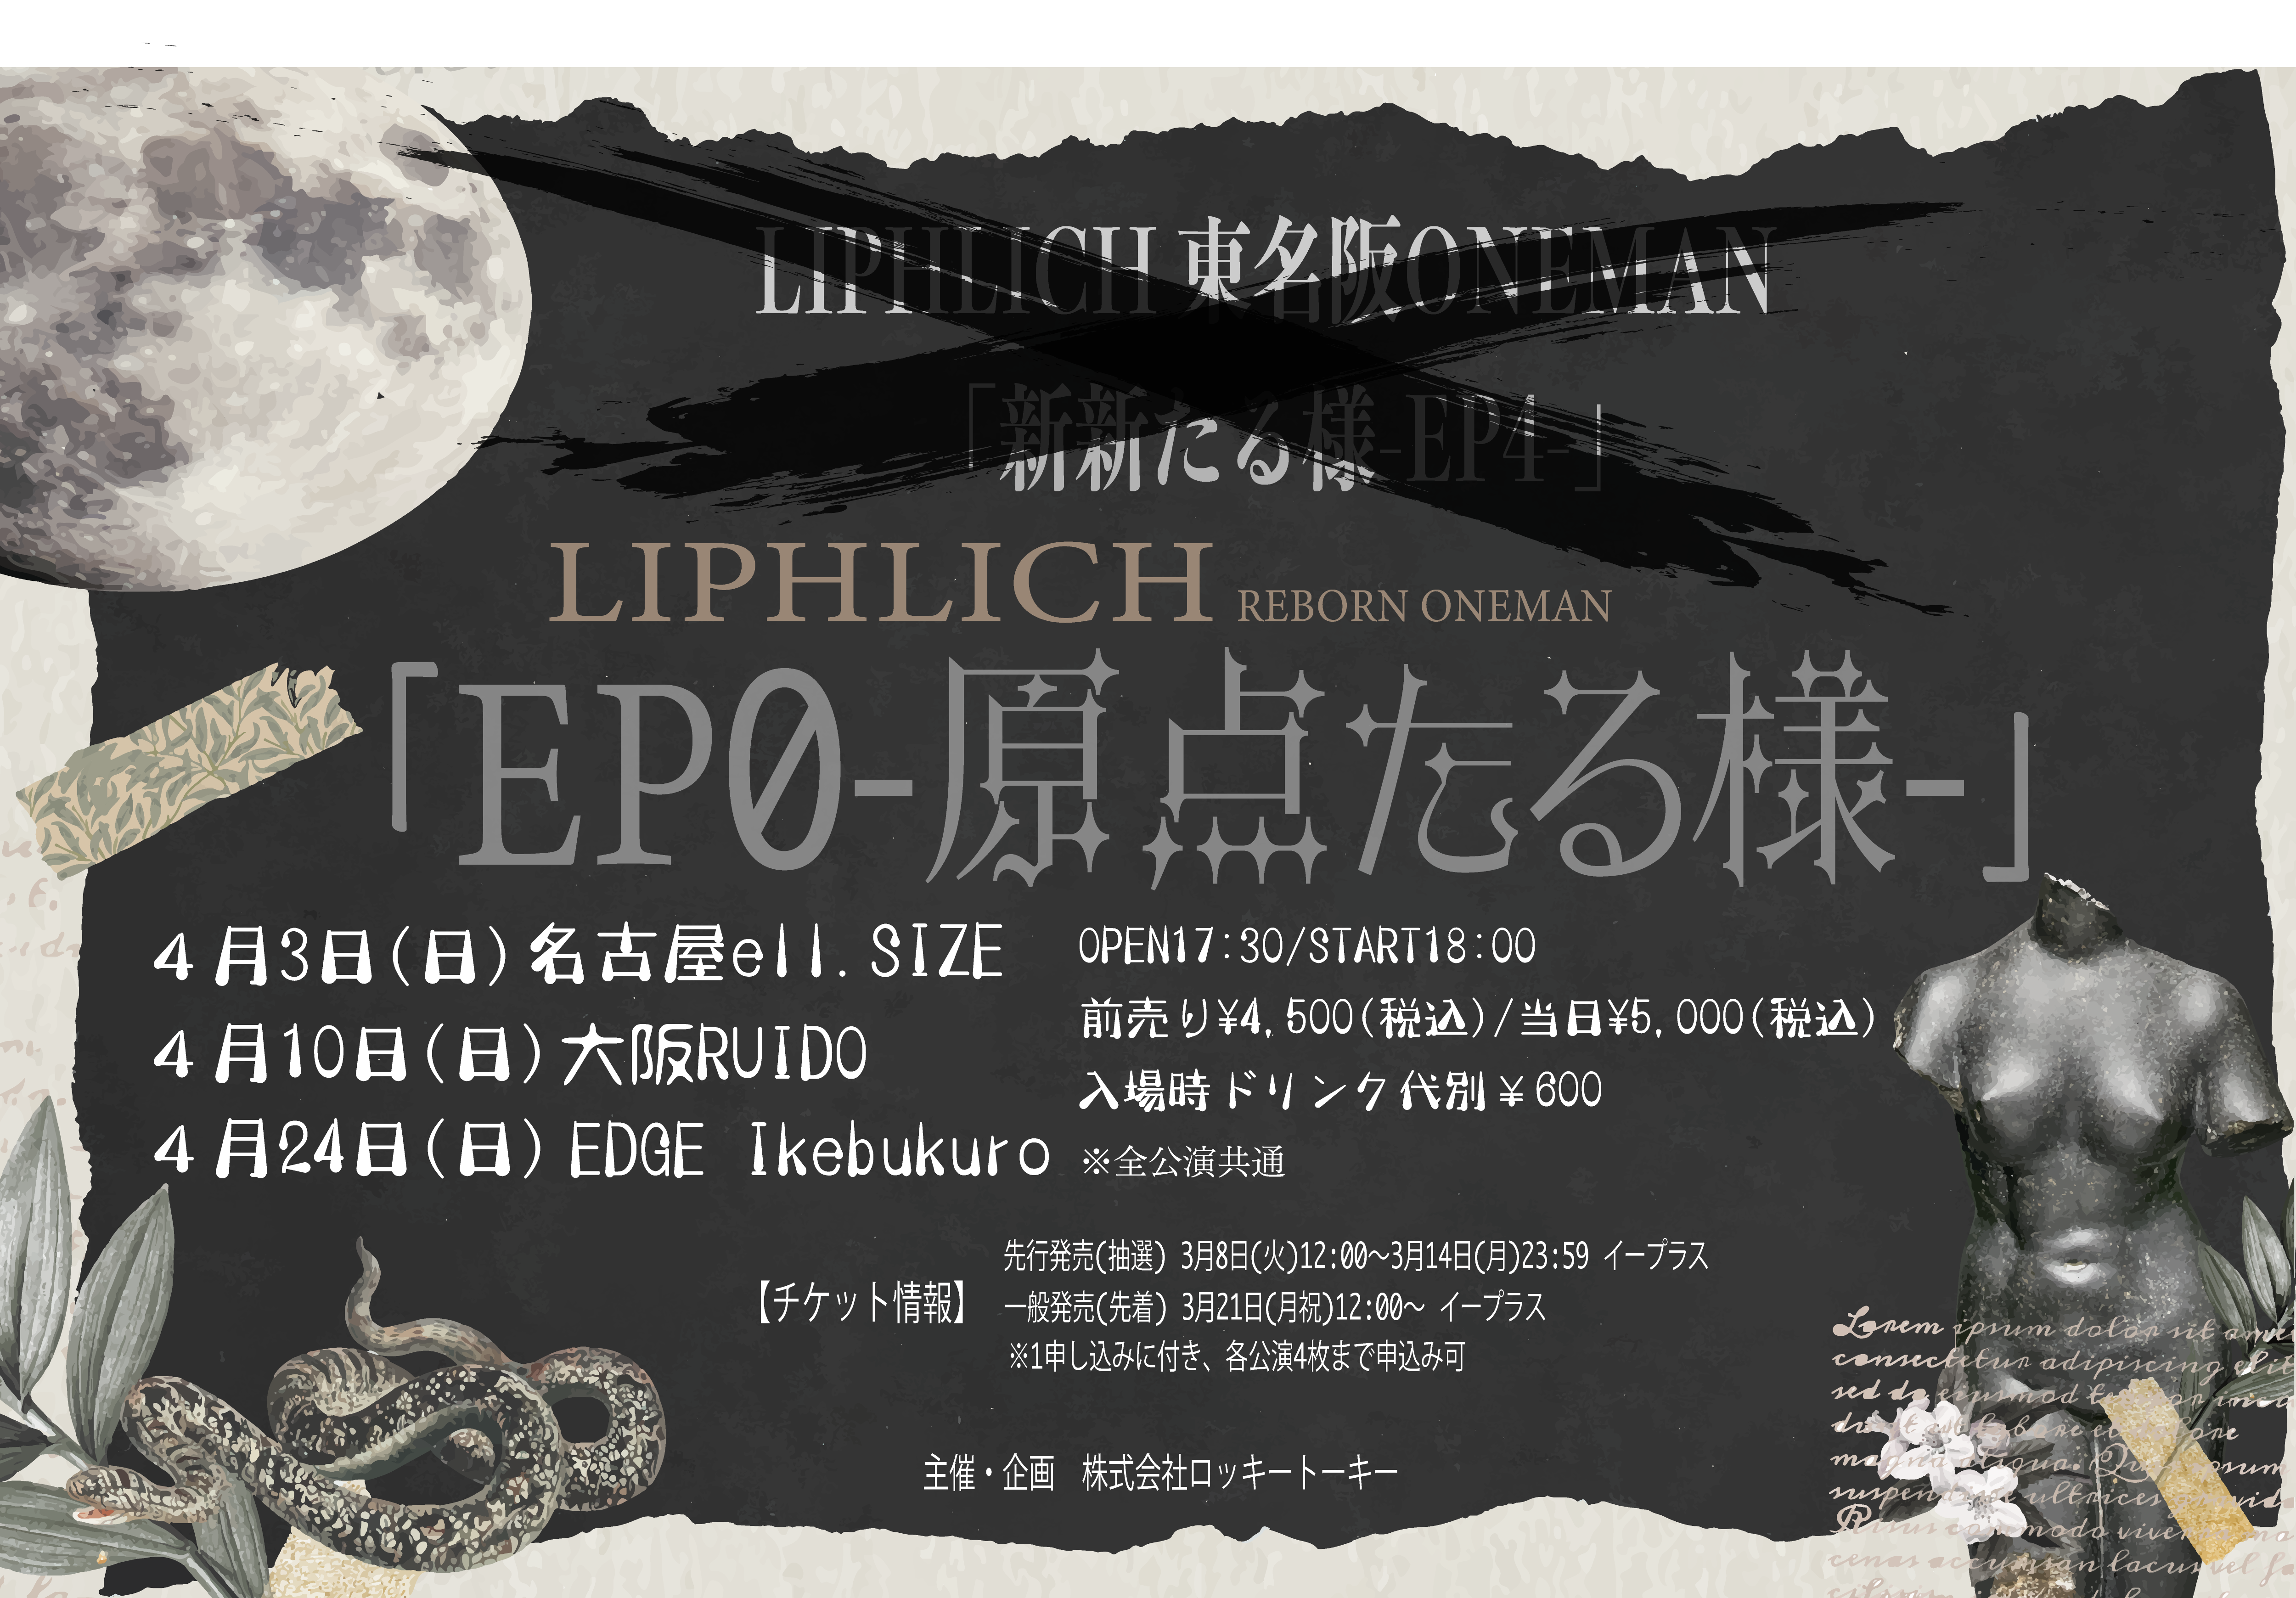 LIPHLICH 東名阪ONEMAN「新新たる様-EP4-」→ LIPHLICH REBORN ONEMAN 「EP0-原点たる様-」